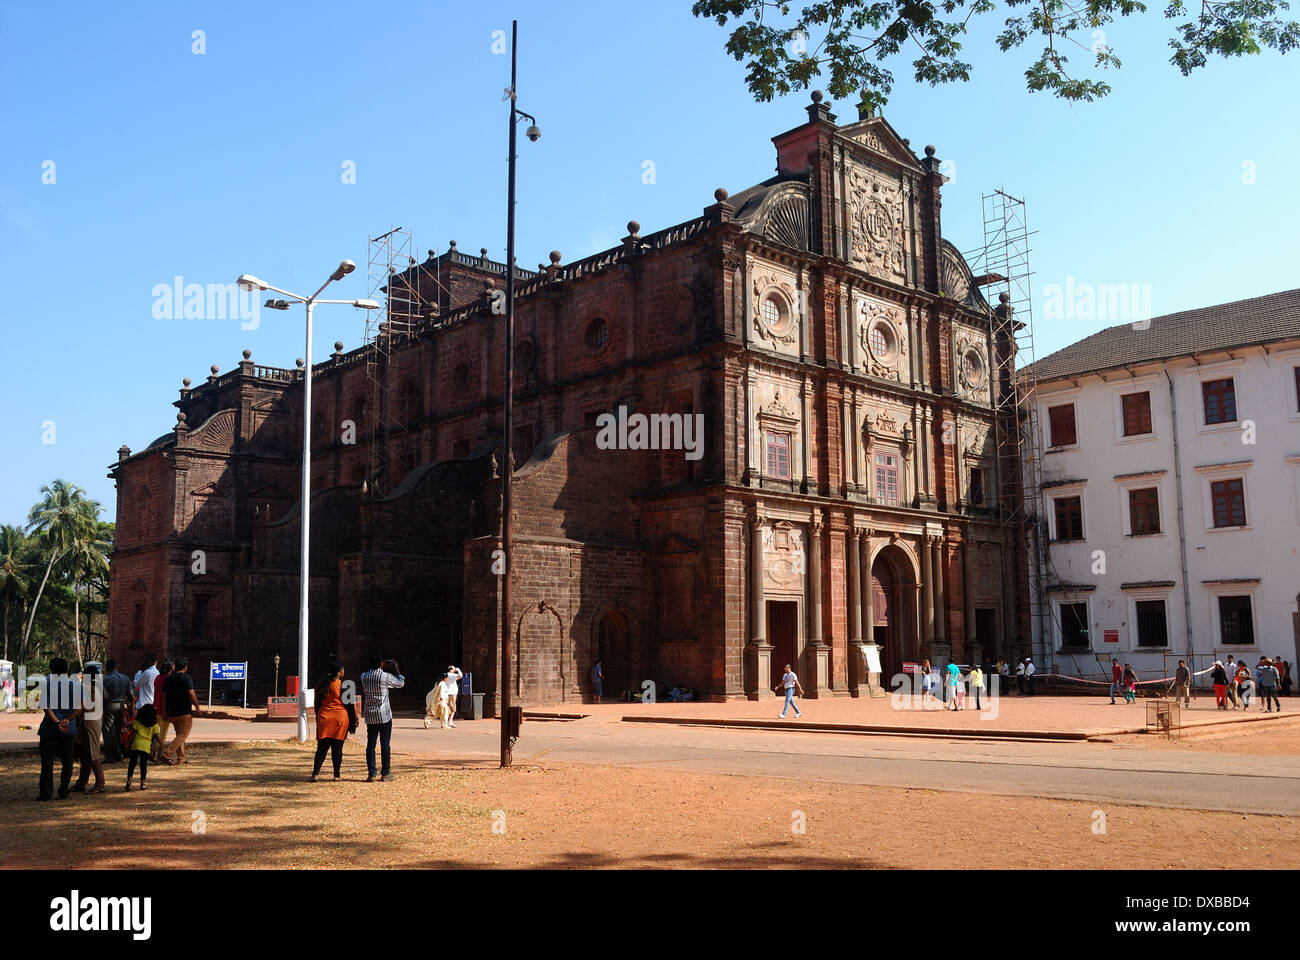 Basalica di Bom Jesus chiesa,Goa, India. Questo è un sito patrimonio mondiale dell'UNESCO. Foto Stock